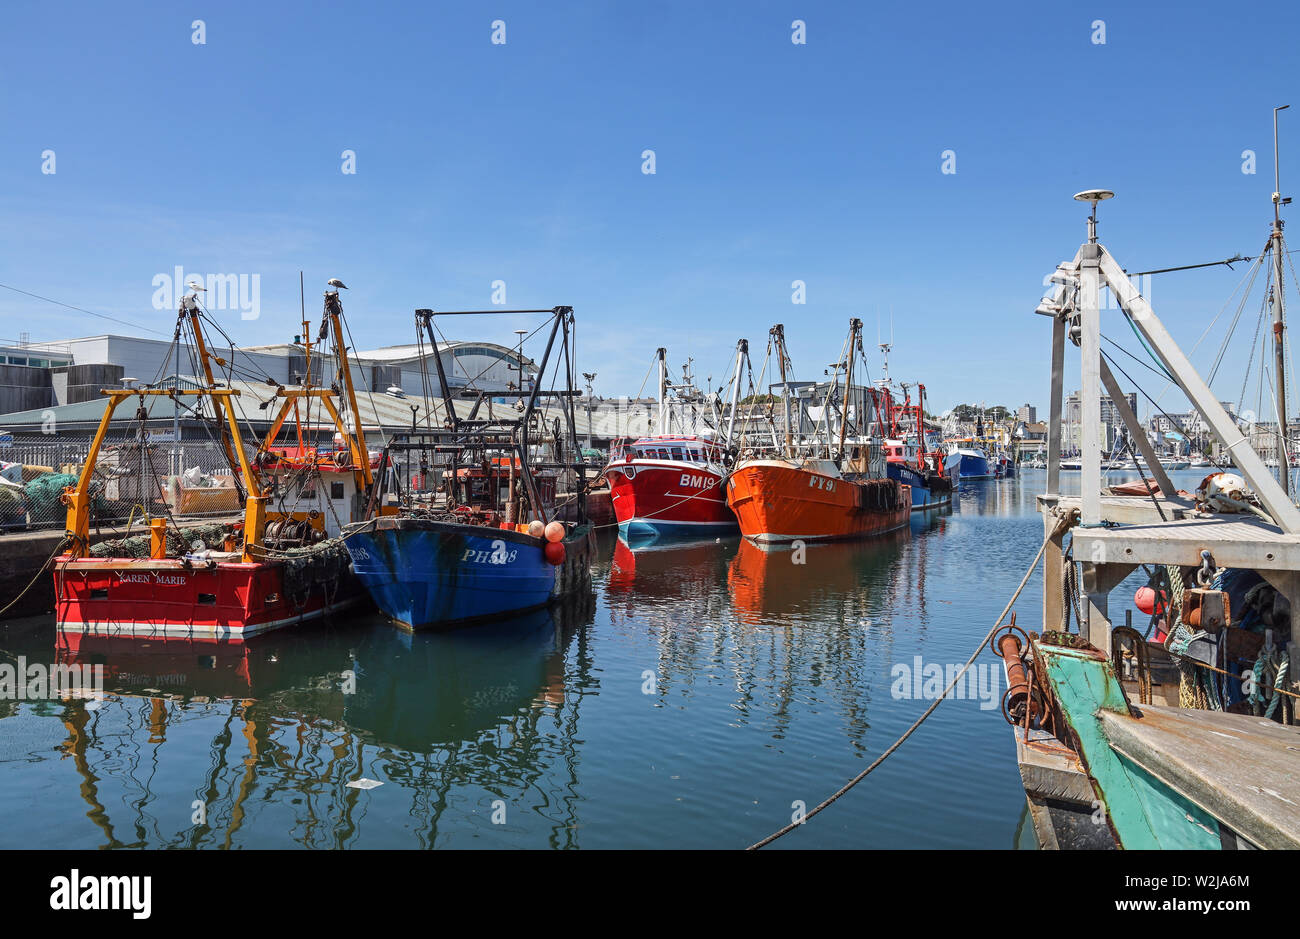 Plymouth Sutton Harbour, inneren Becken, bunten Fischerboote in einer sicheren Zufluchtsort. Stockfoto